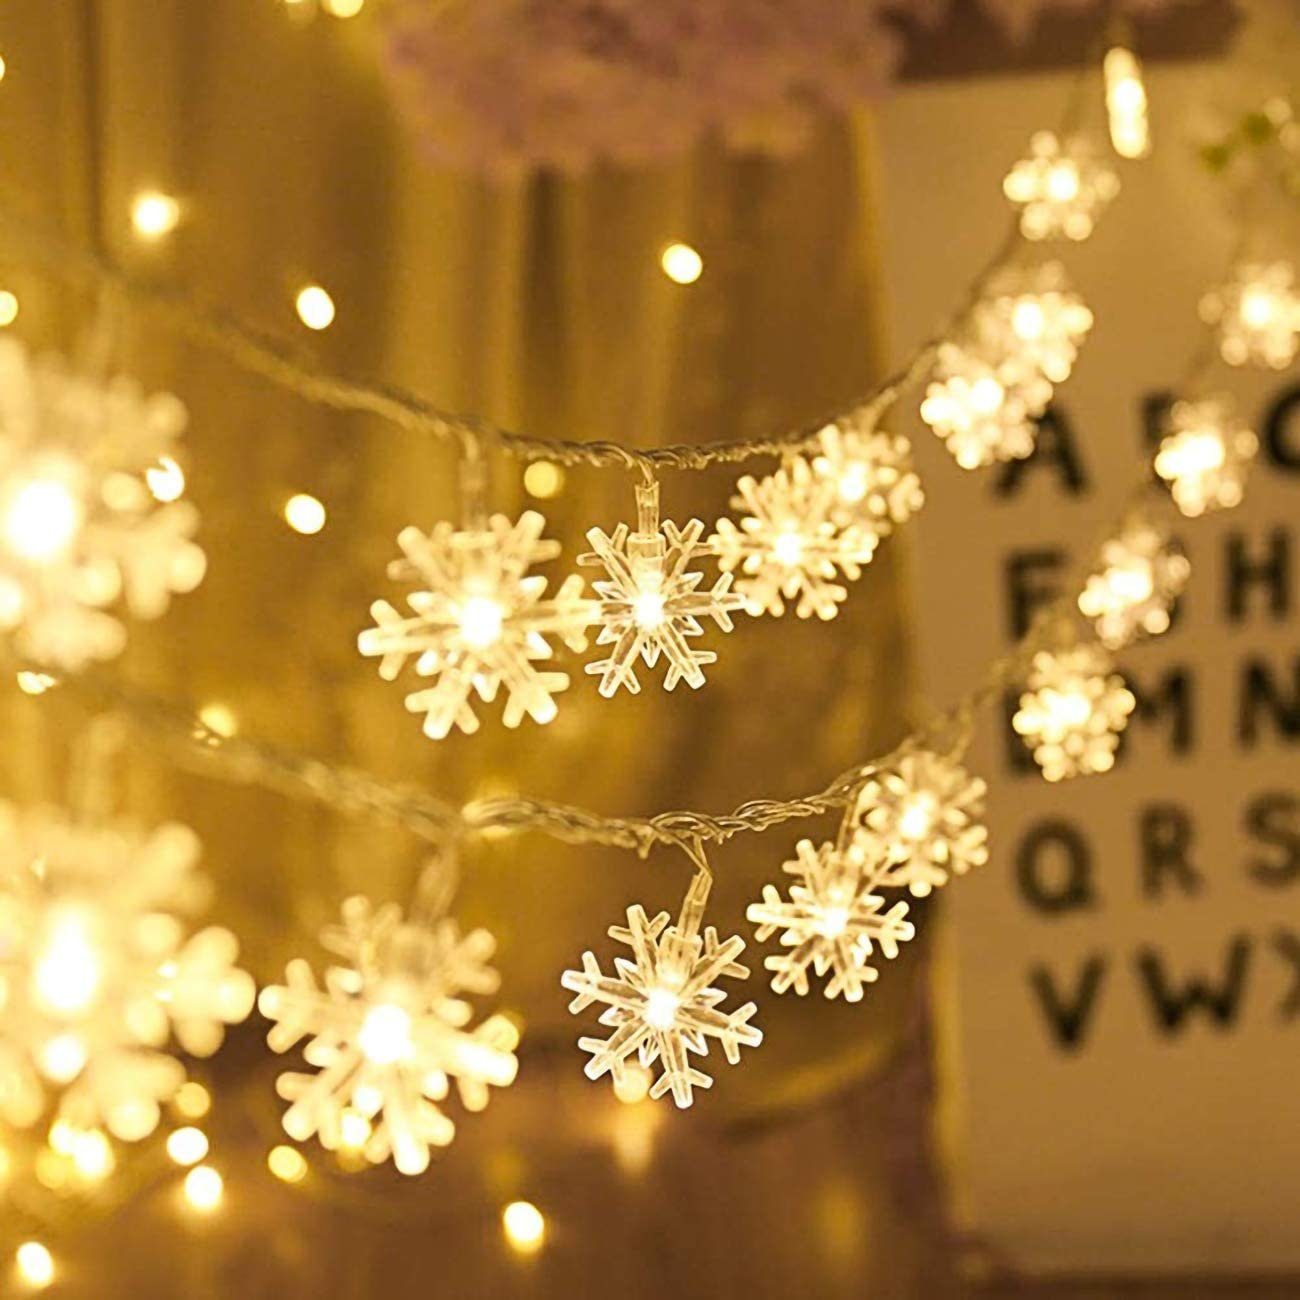 LED Herz E0204, Alster Weihnachten LED-Lichterkette Weihnachten, Herz Schneeflocken Lichterkette, Winter Alster Beleuchtung